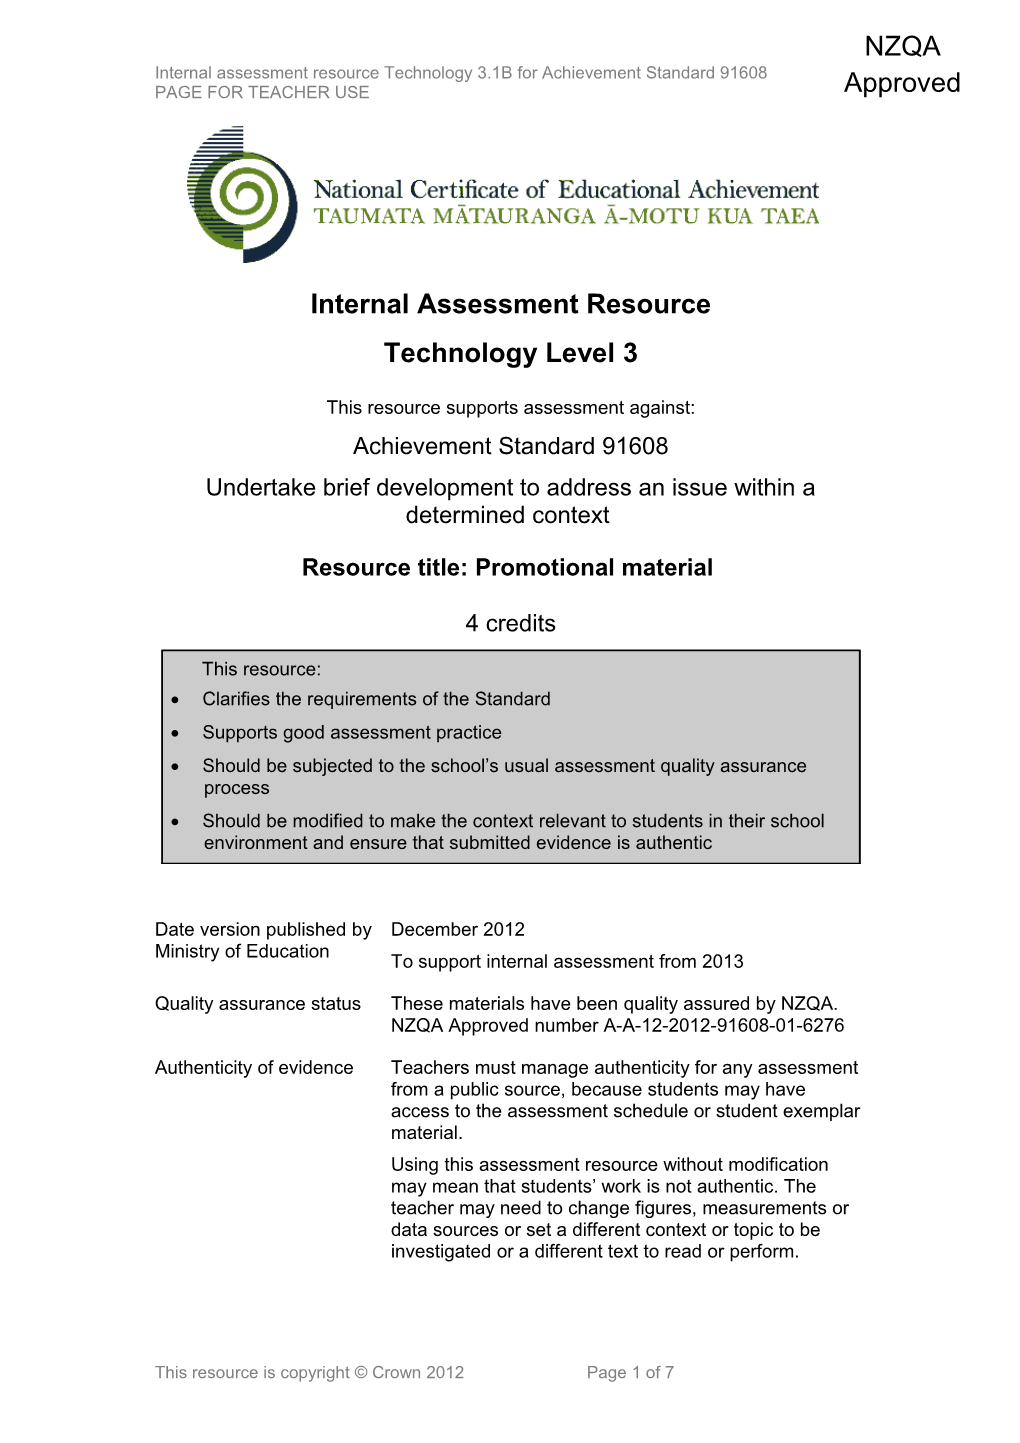 Level 3 Technology Internal Assessment Resource